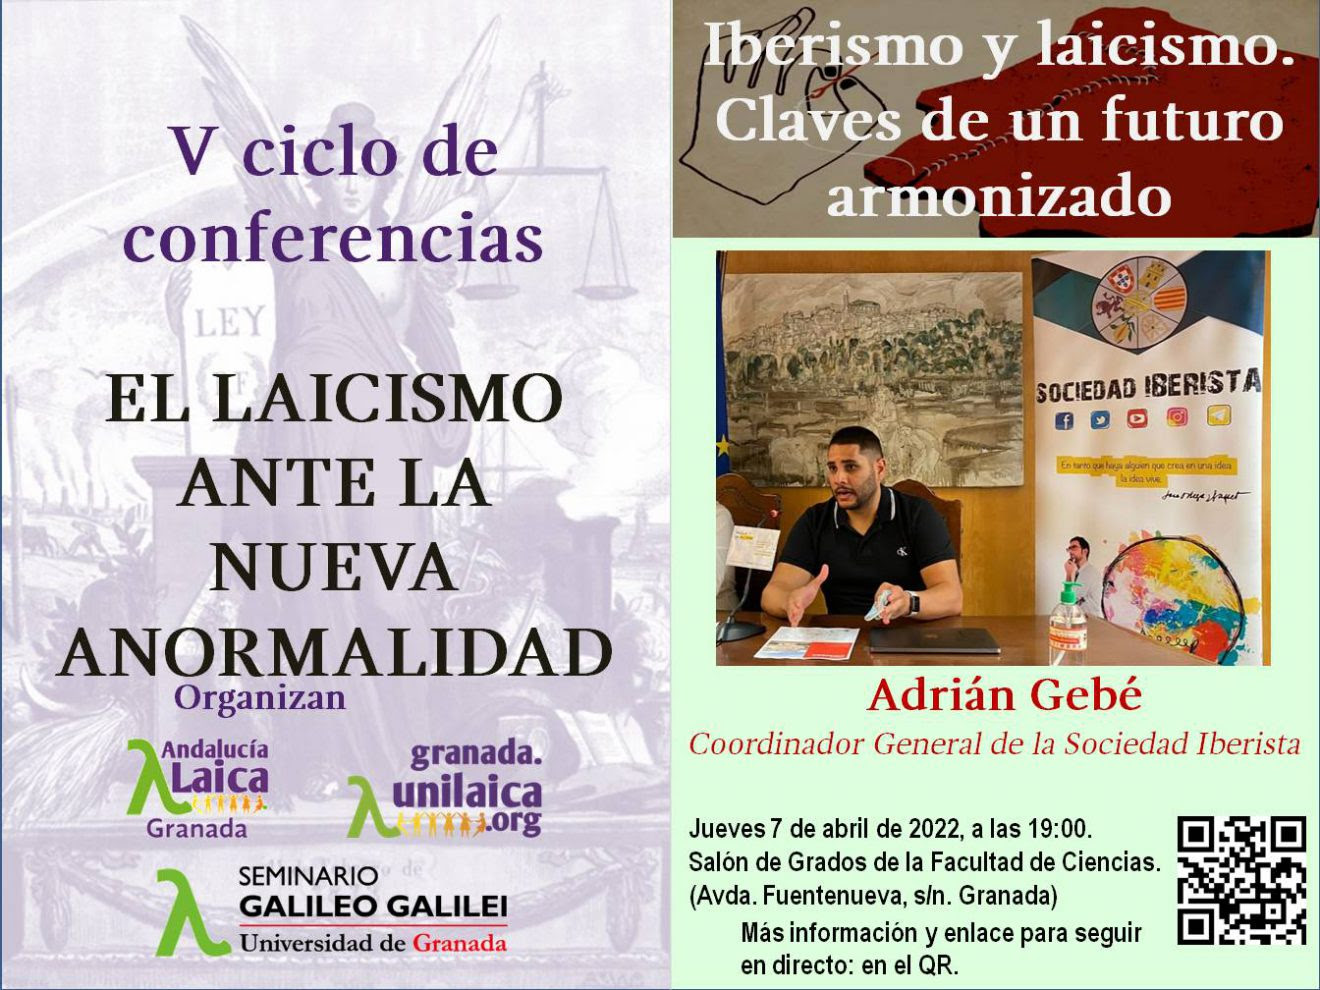 Granada Laica continúa su ciclo de conferencias mañana jueves dentro del Seminario Galileo Galilei: ＂Iberismo y laicismo. Claves de un futuro armonizado＂ por Adrián Gebé